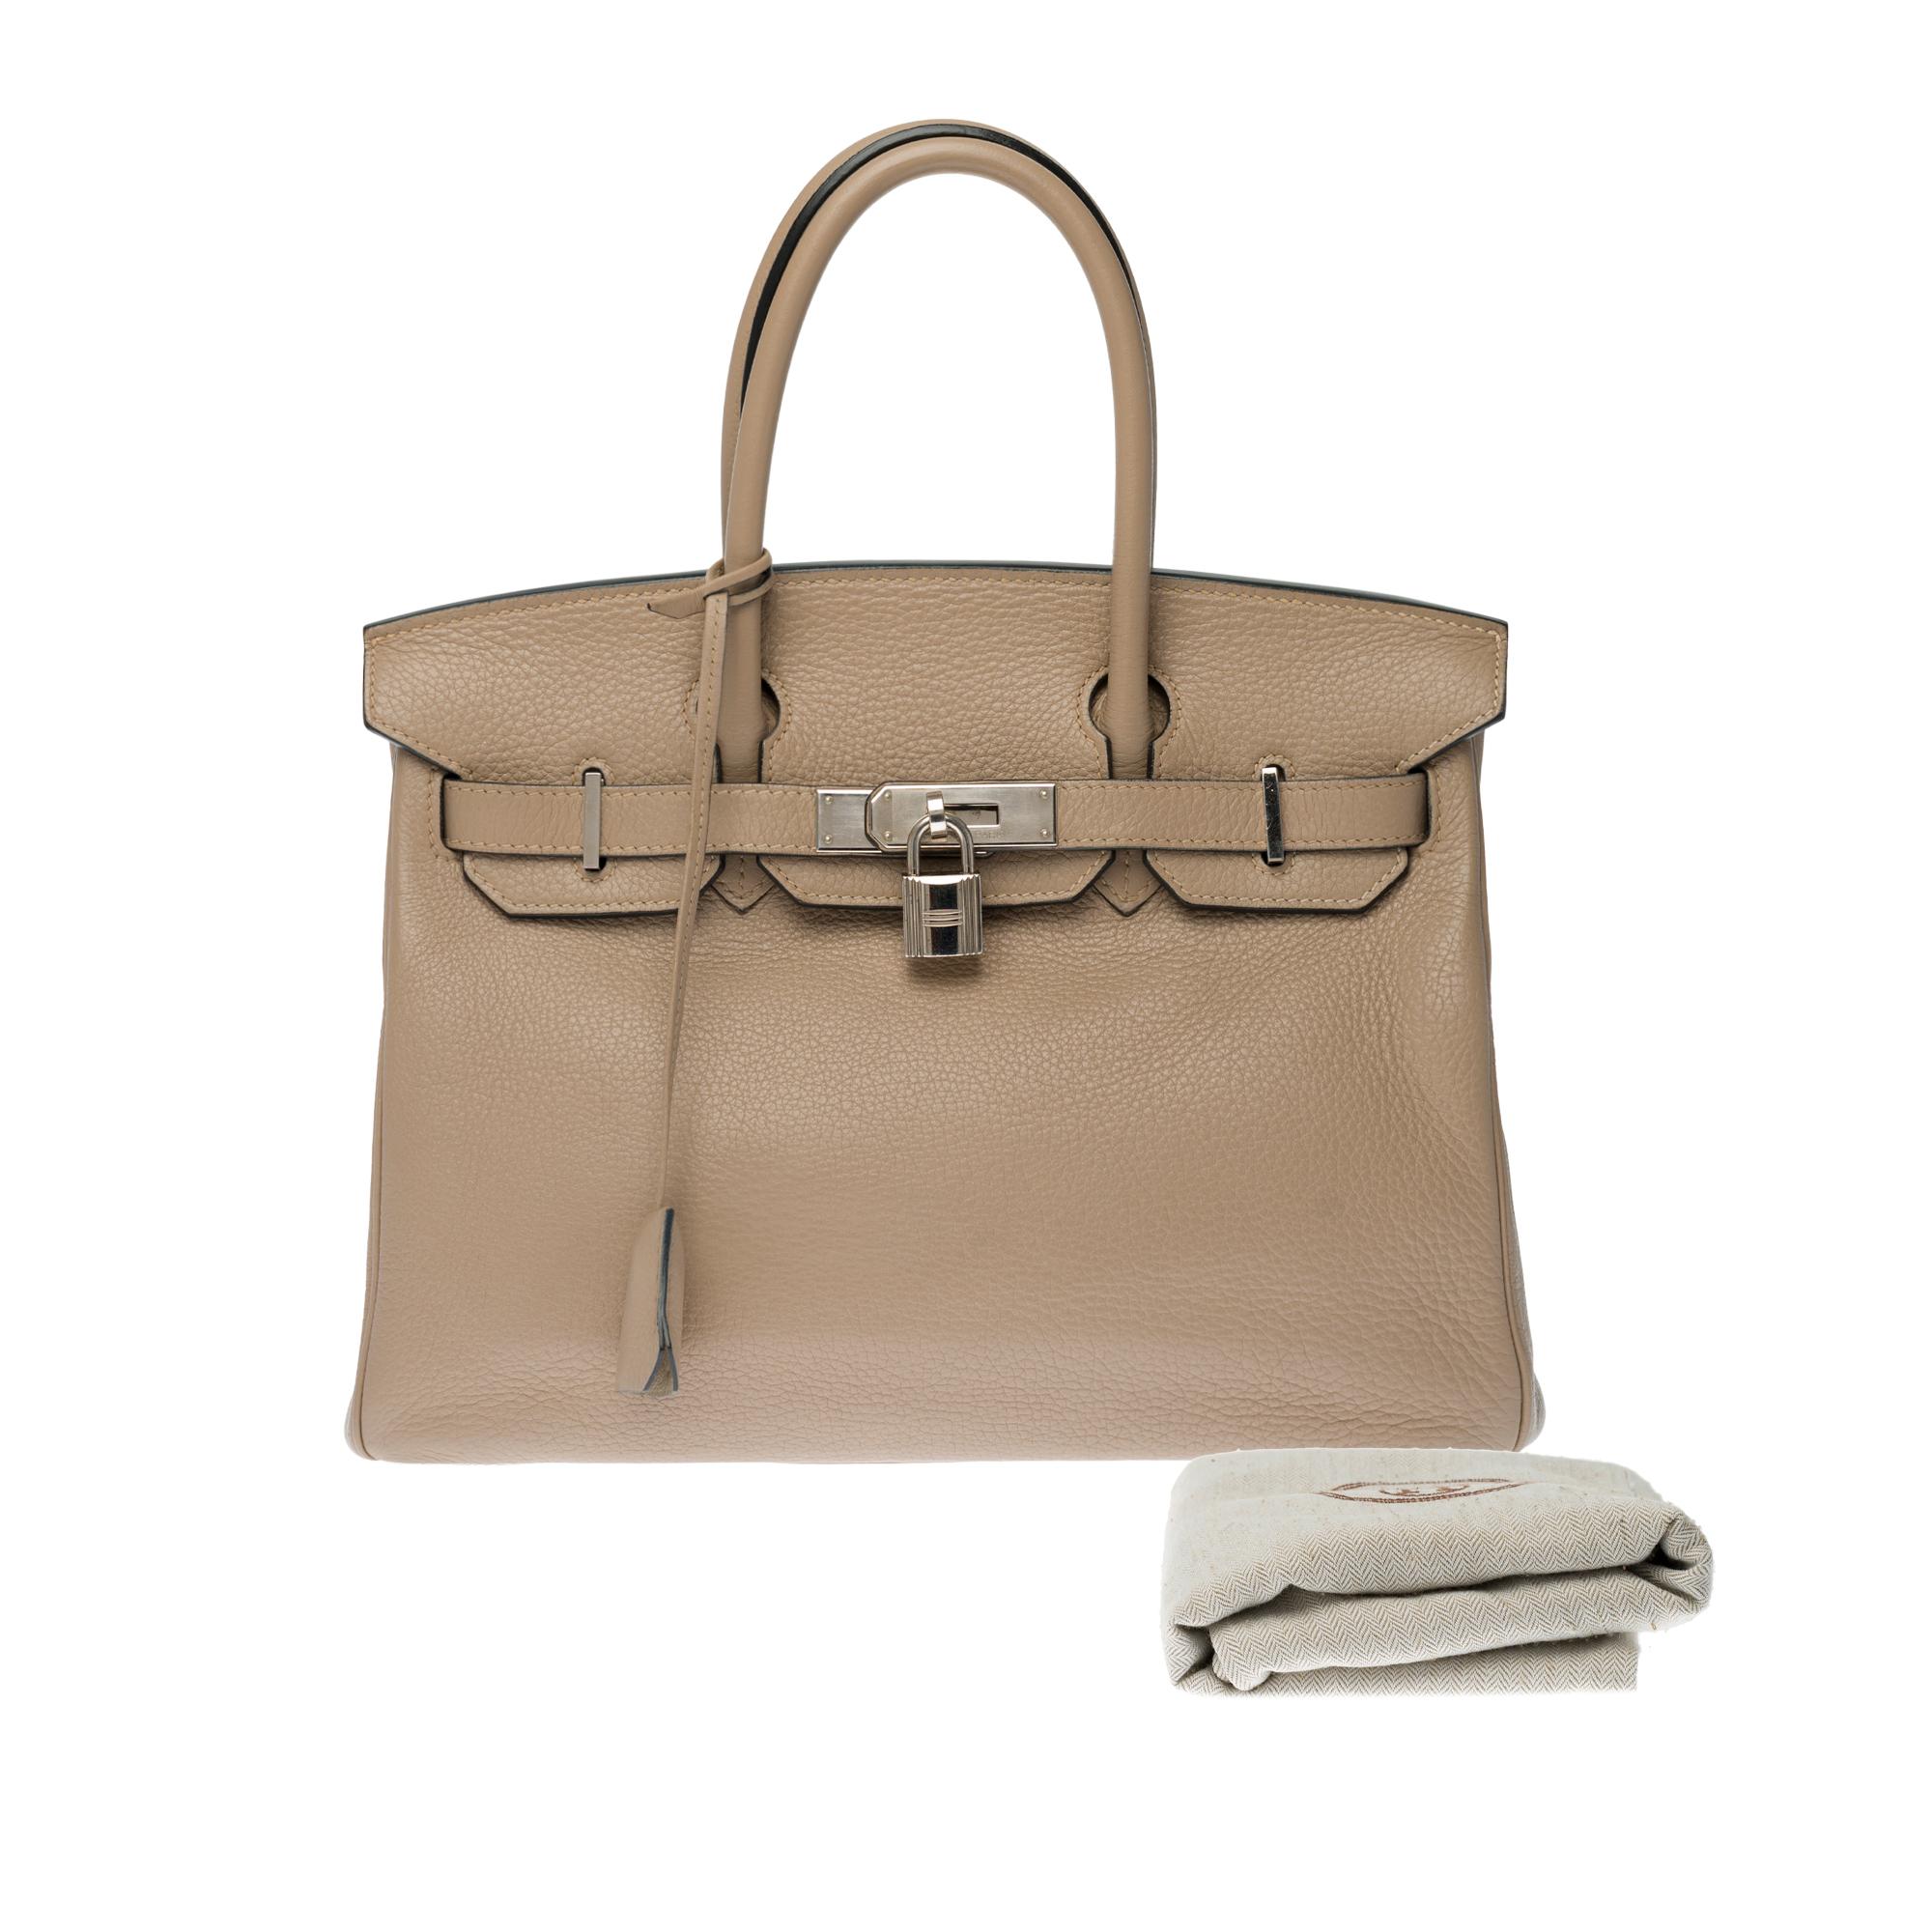 Hermès Birkin 30 handbag in Trench Togo leather, silver Palladium hardware 6